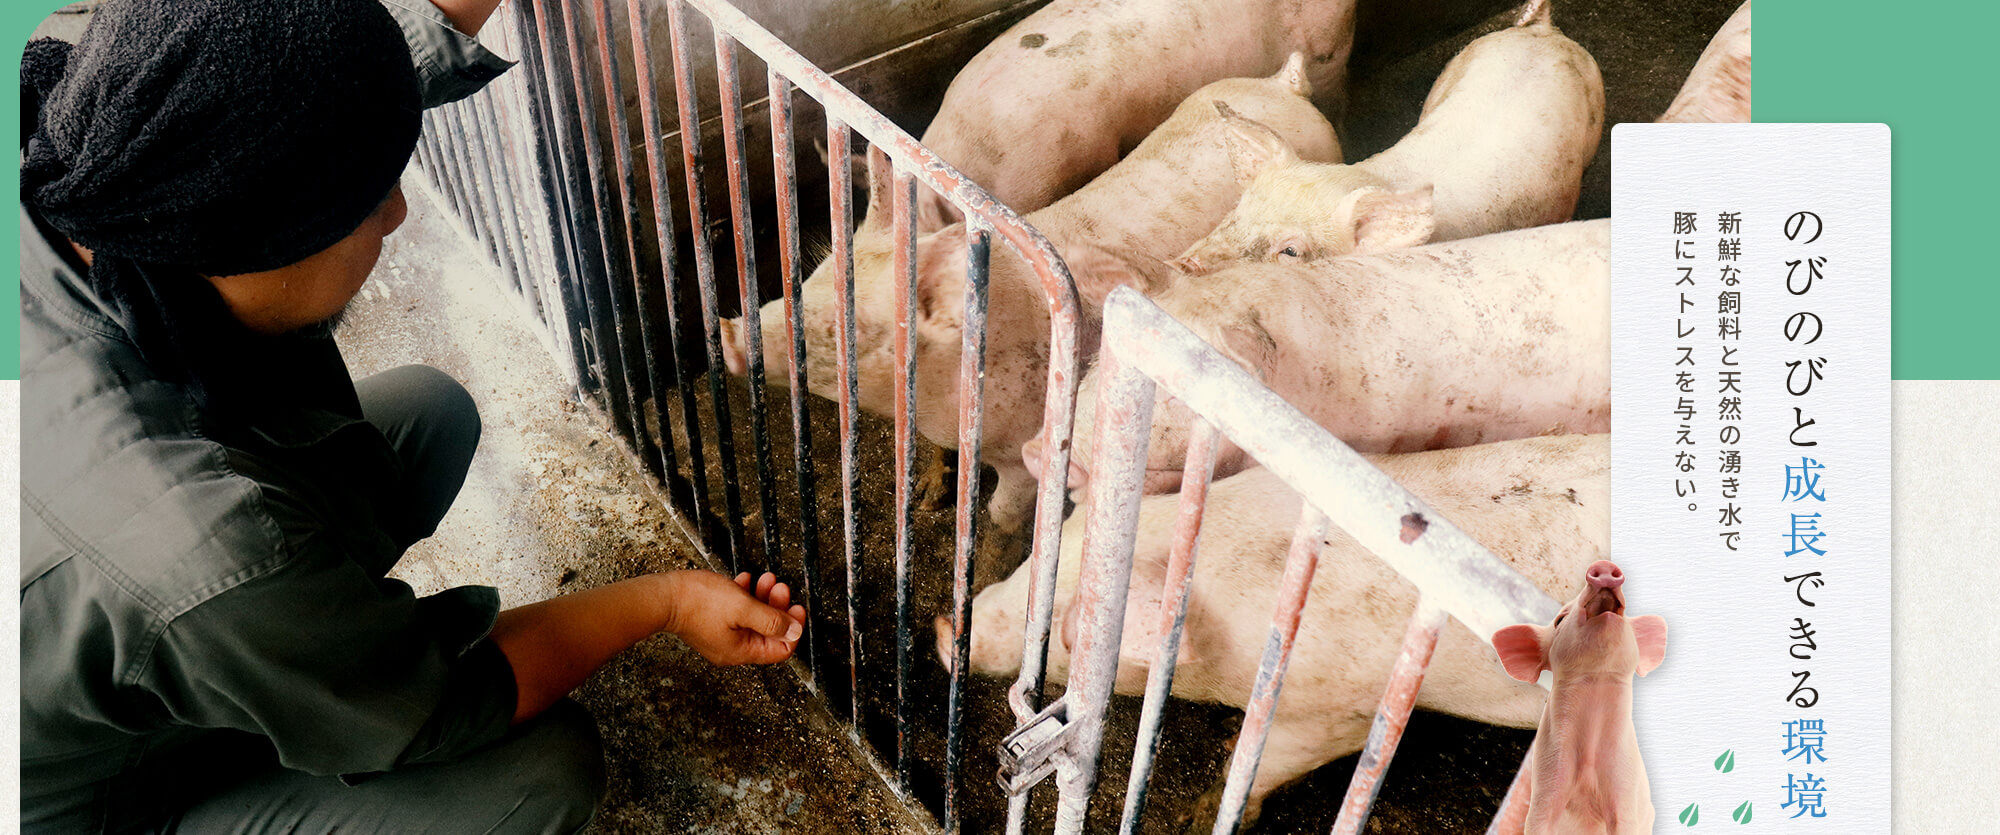 新鮮な飼料と天然の湧き水で豚にストレスを与えない、のびのびと成長できる環境